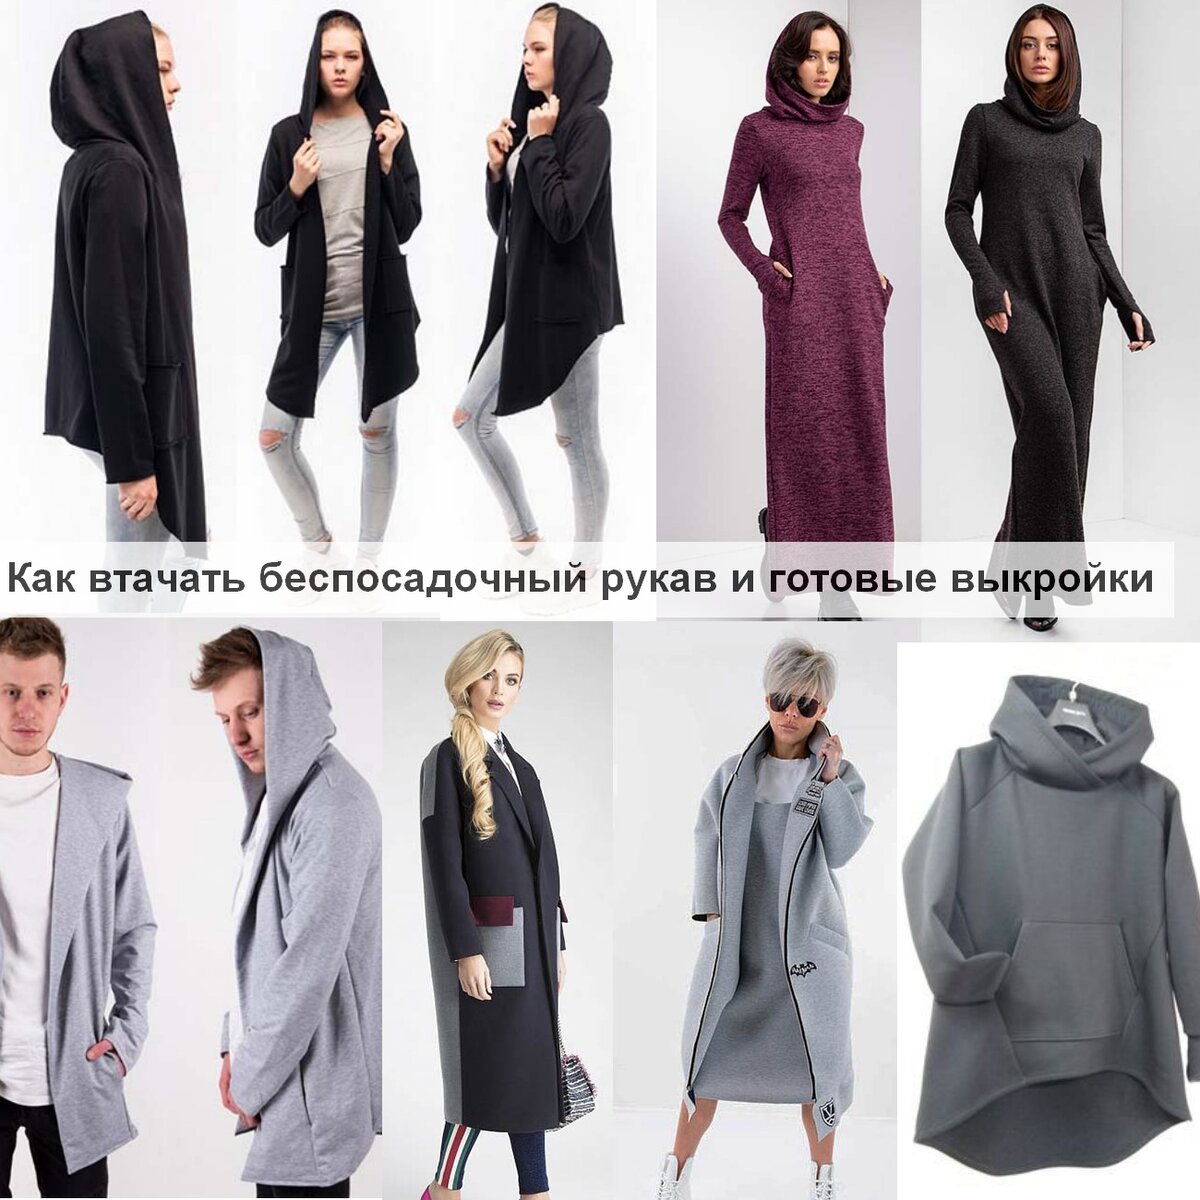 Выкройка пальто женского: скачать, купить готовую выкройку пальто прямого, оверсайз 